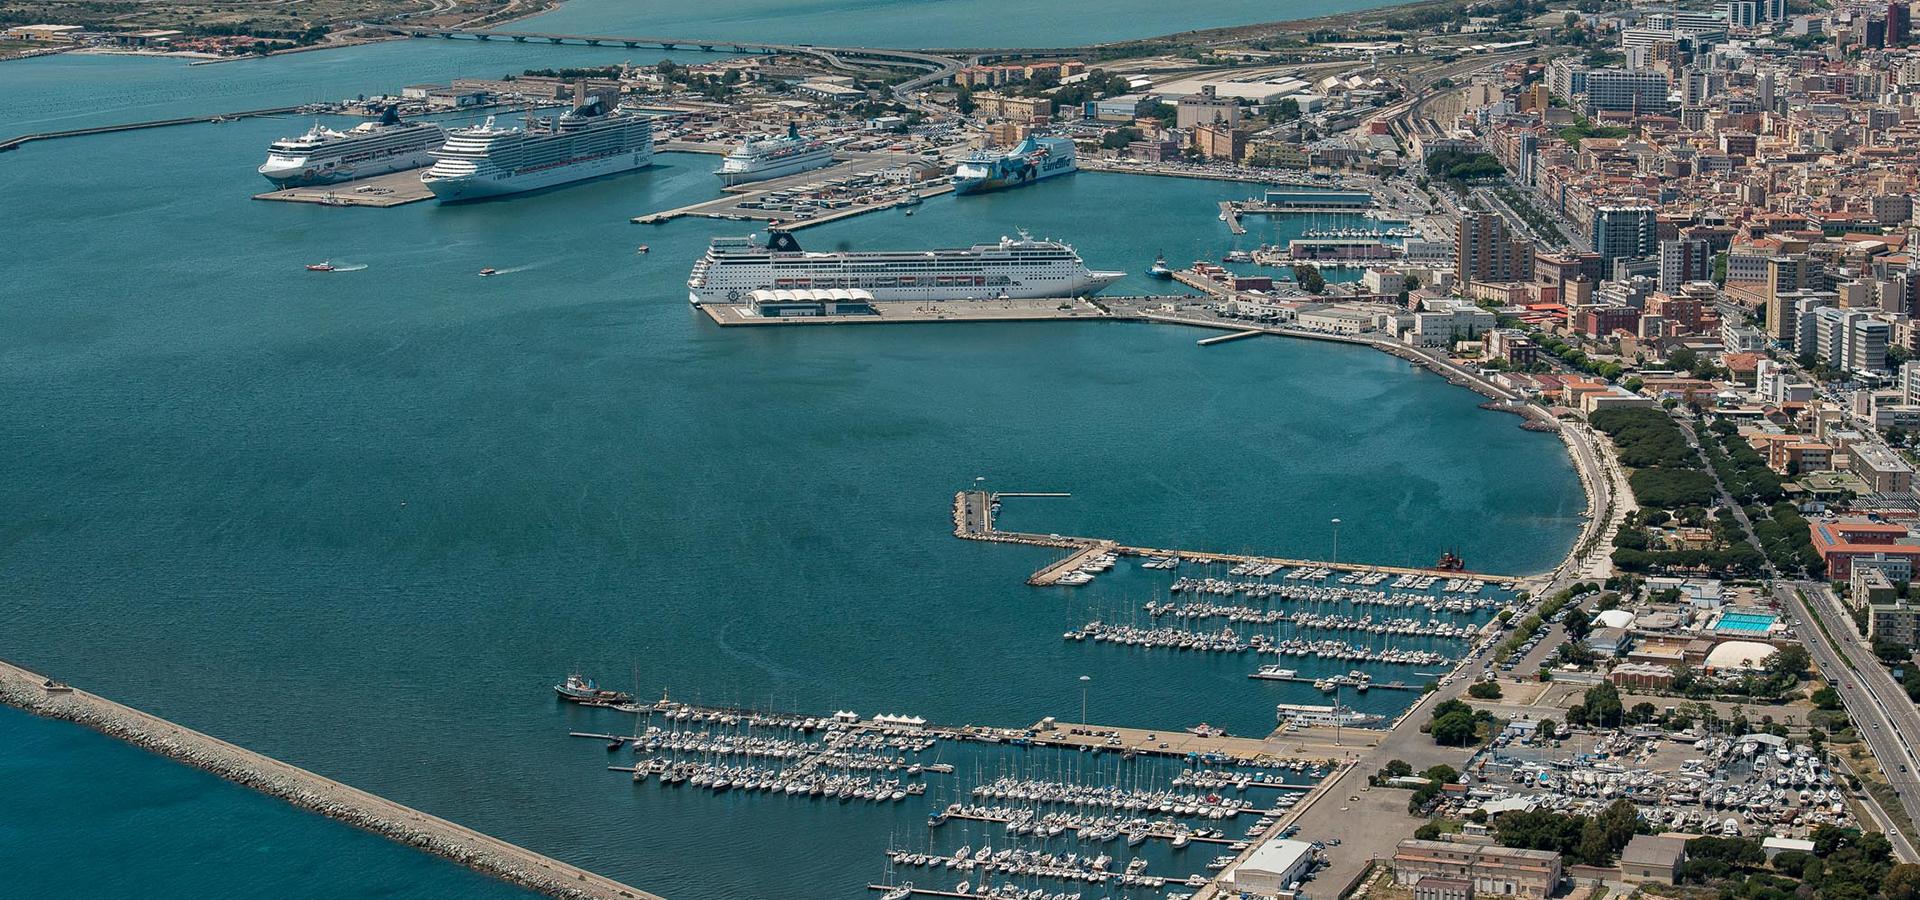 Port of Cagliari